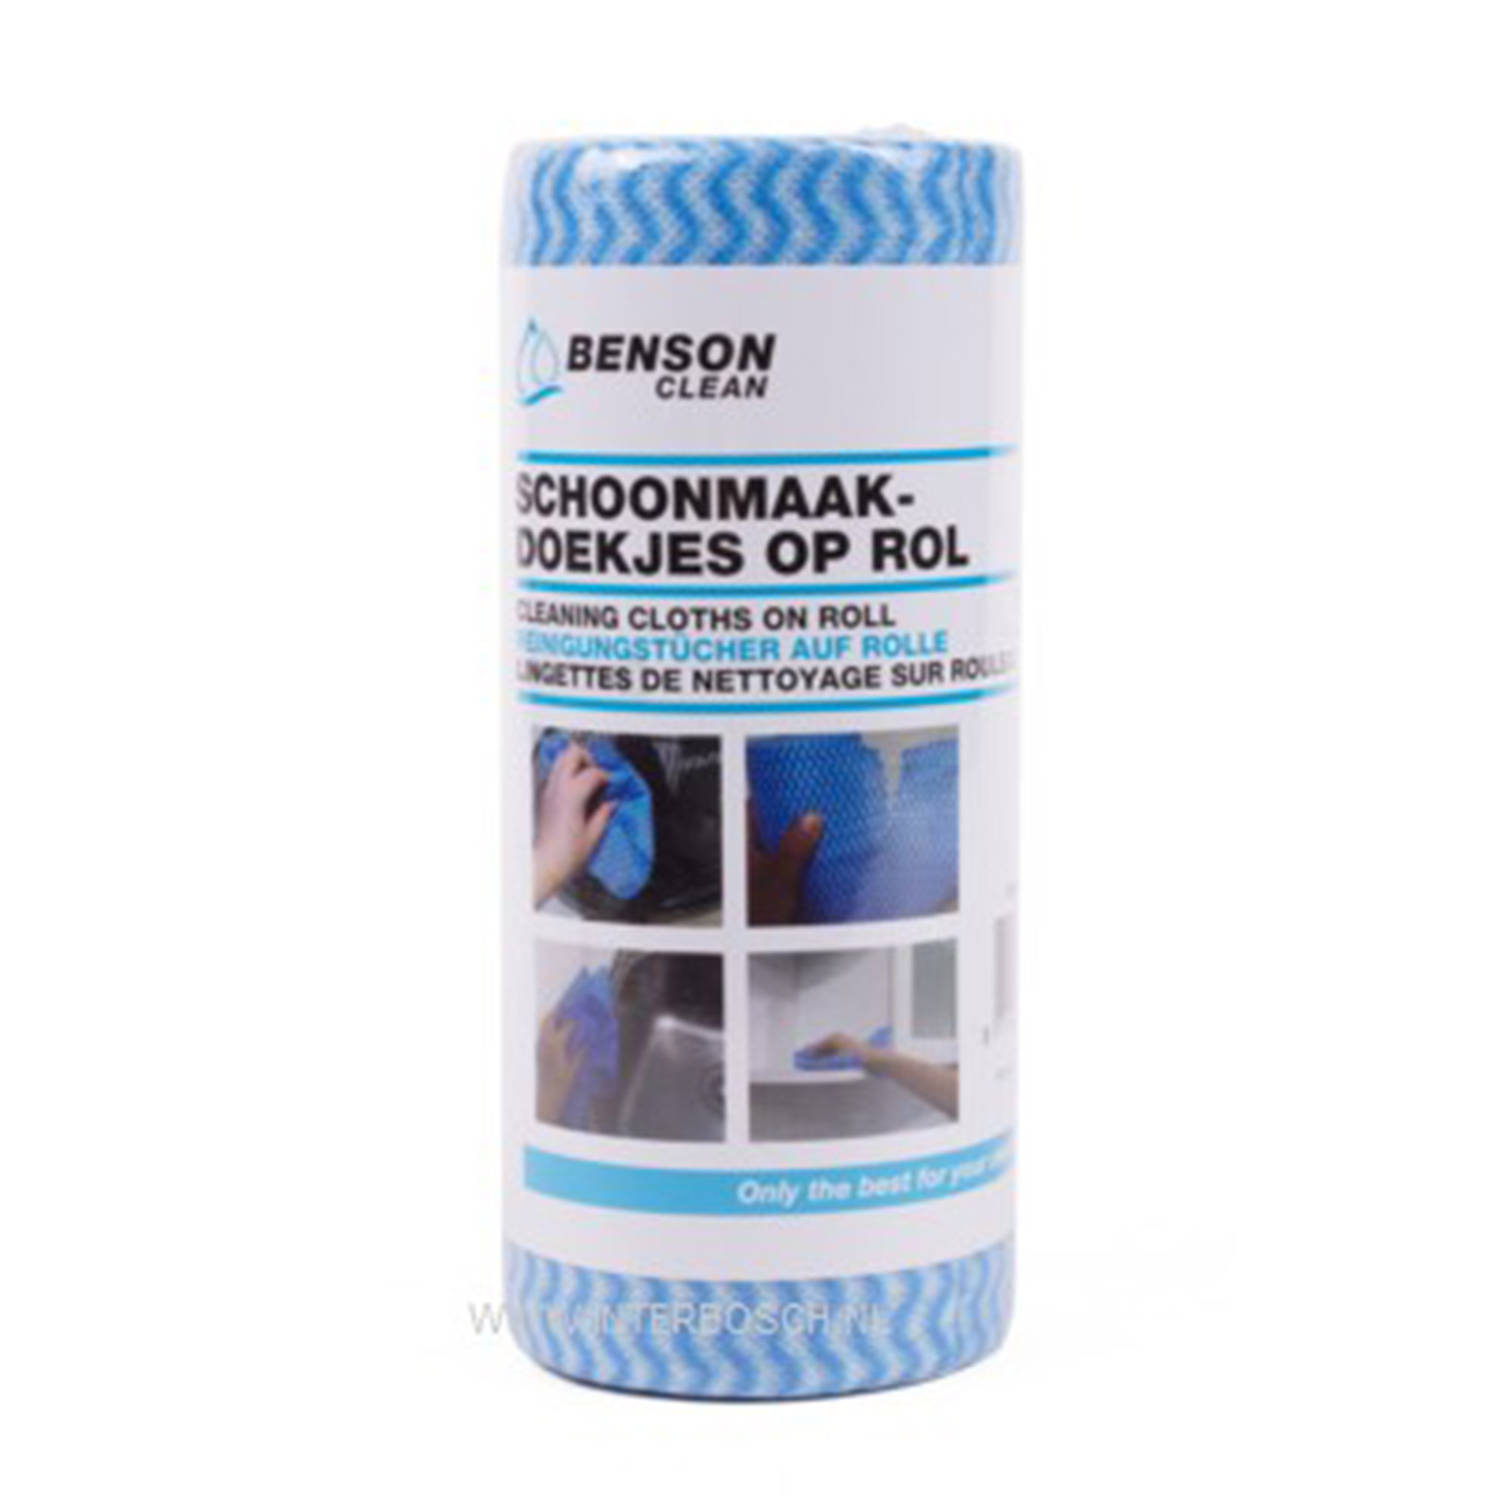 Benson 50x Reinigingsdoekjes / schoonmaakdoekjes op rol - Blauw - Vaatdoekjes